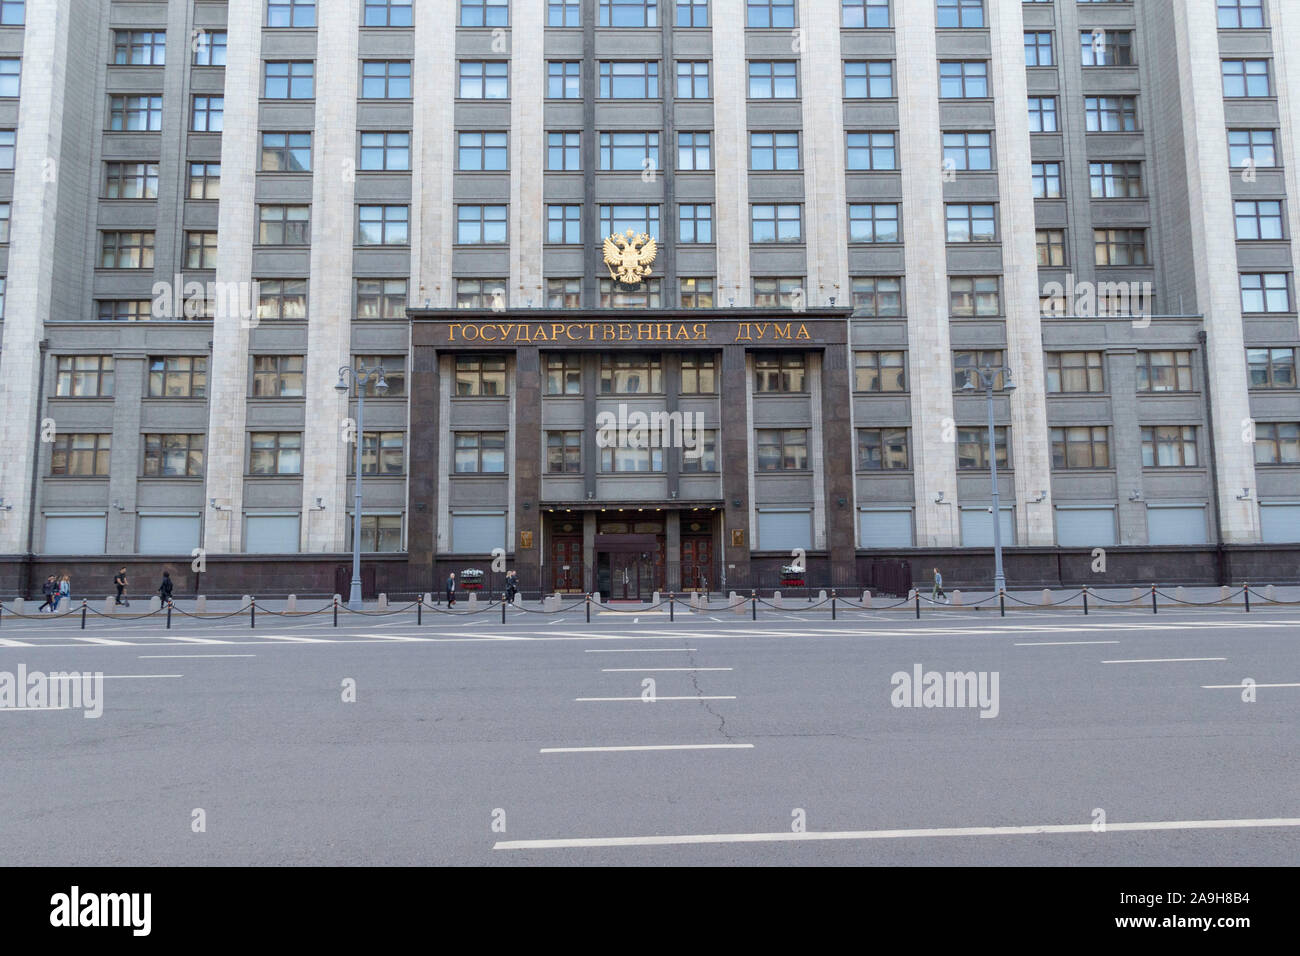 Mosca, Russia - Luglio 7, 2019: facciata della Duma di Stato della Federazione Russa, parte del parlamento russo. Il palazzo si trova in hist Foto Stock